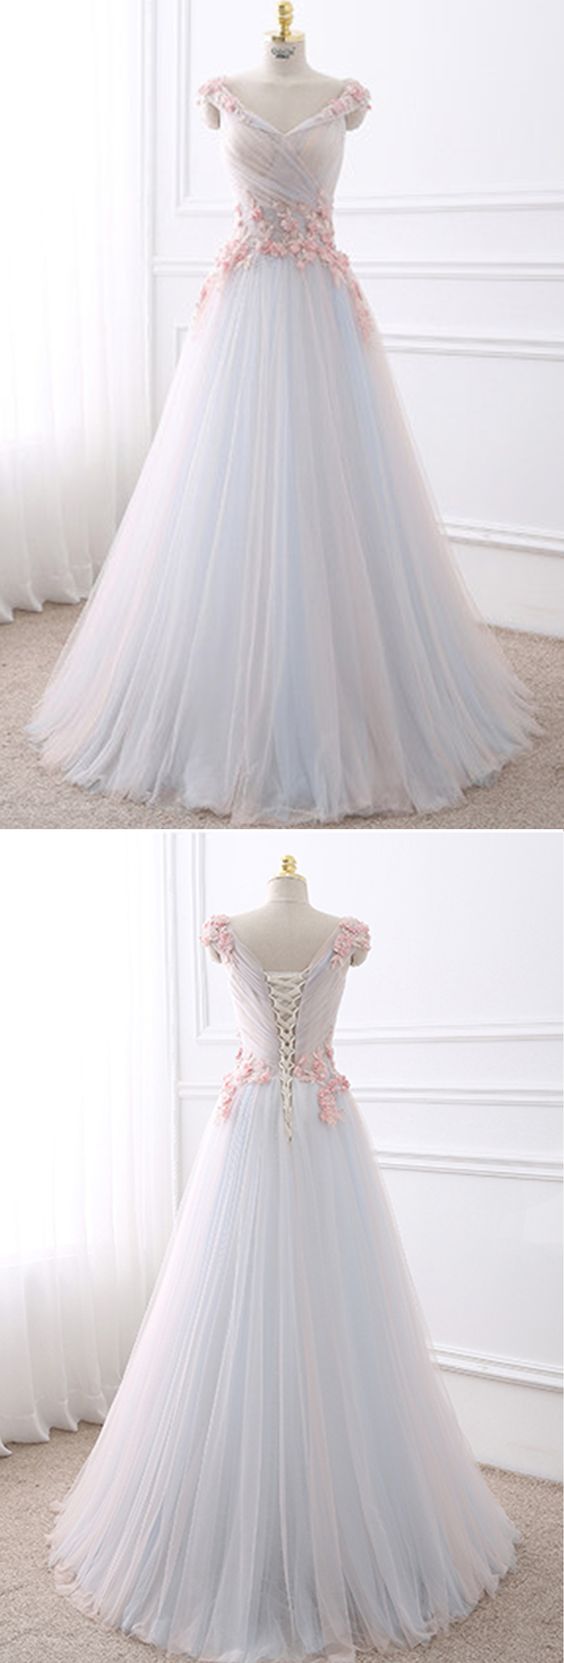 White Tulle V Neck Long Flower Sweet 16 Prom Dress M0275